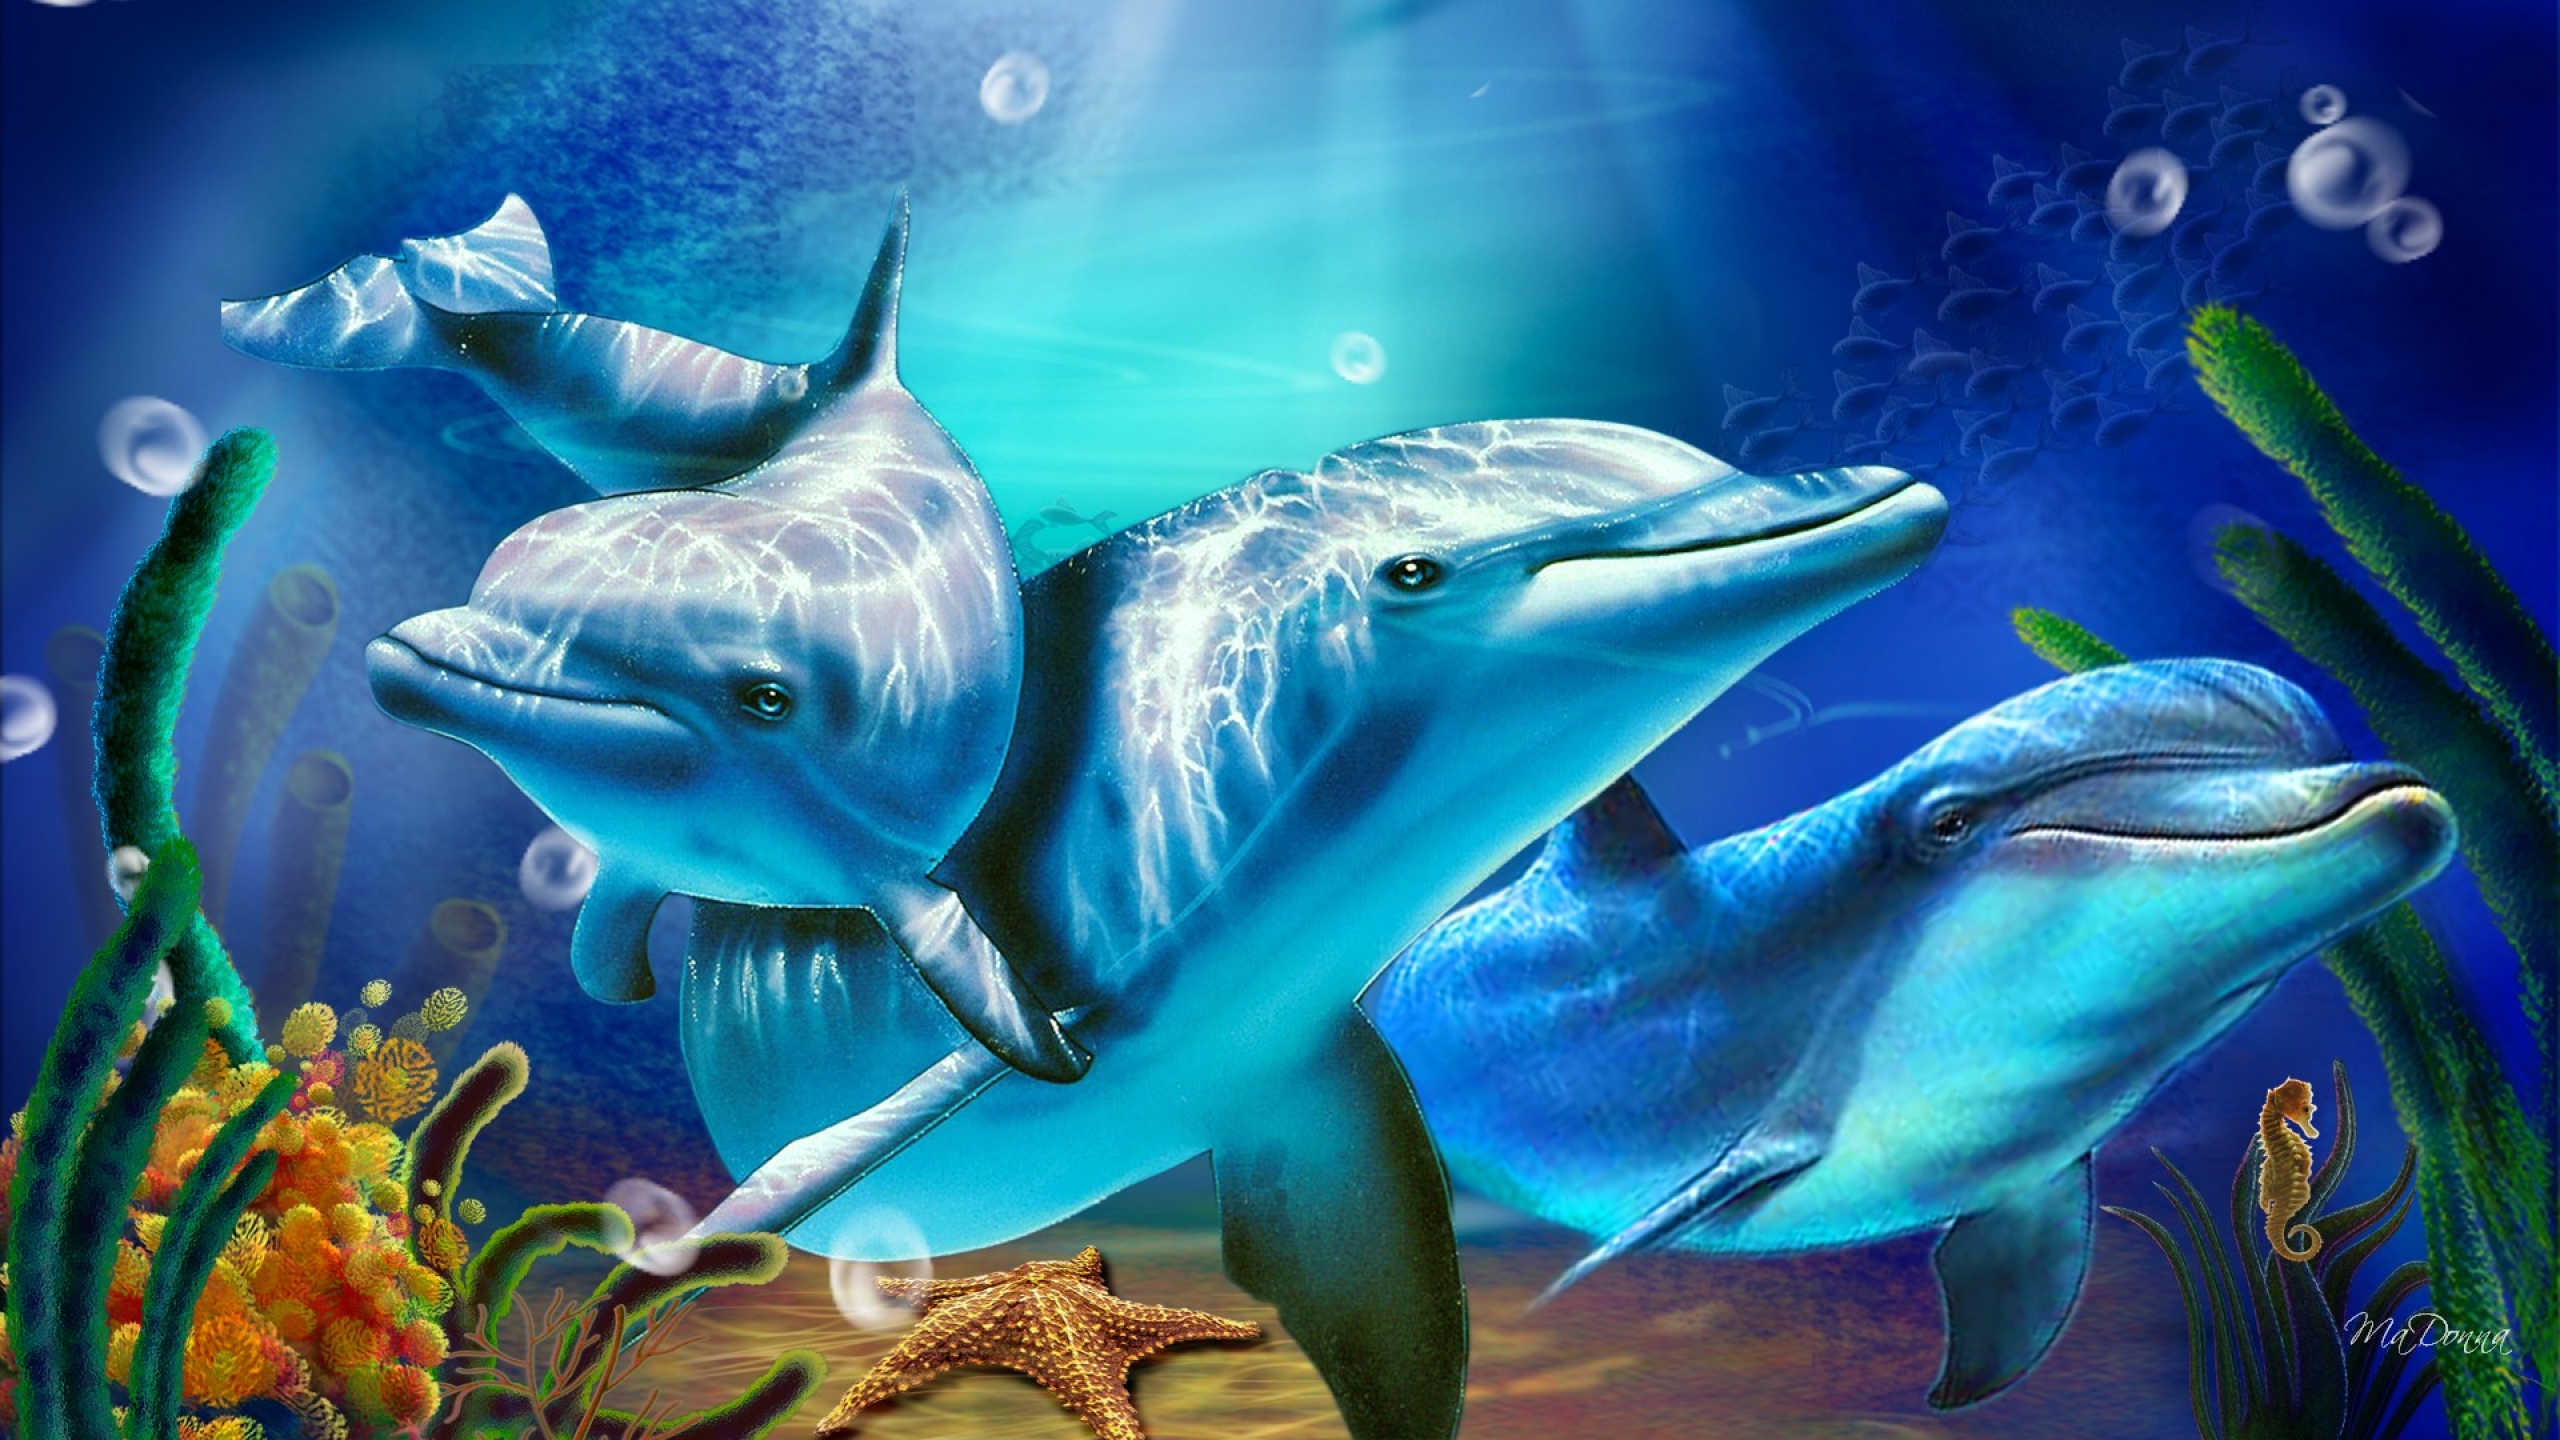 Движущиеся обои на заставку. Подводный мир дельфины. Красивые дельфины. Фотообои дельфины. Заставка на рабочий стол подводный мир.